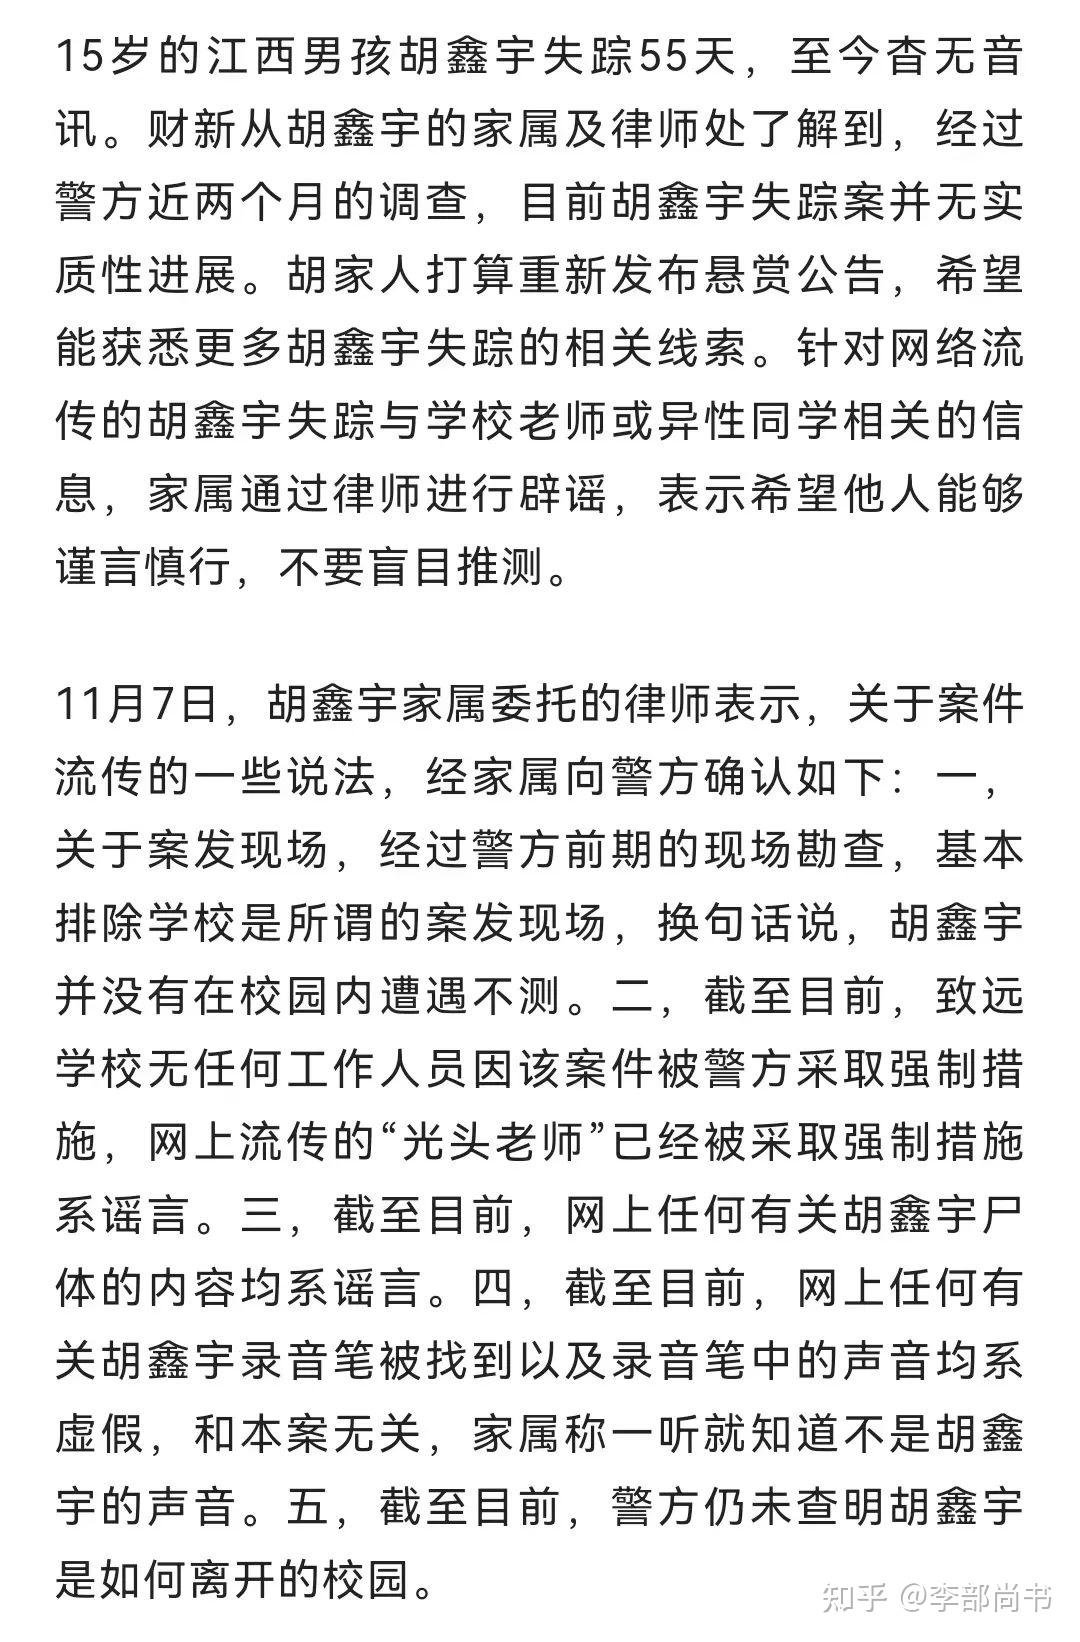 胡鑫宇事件新消息，致远中学校长刘谷来族弟，竟是当地殡仪馆老板